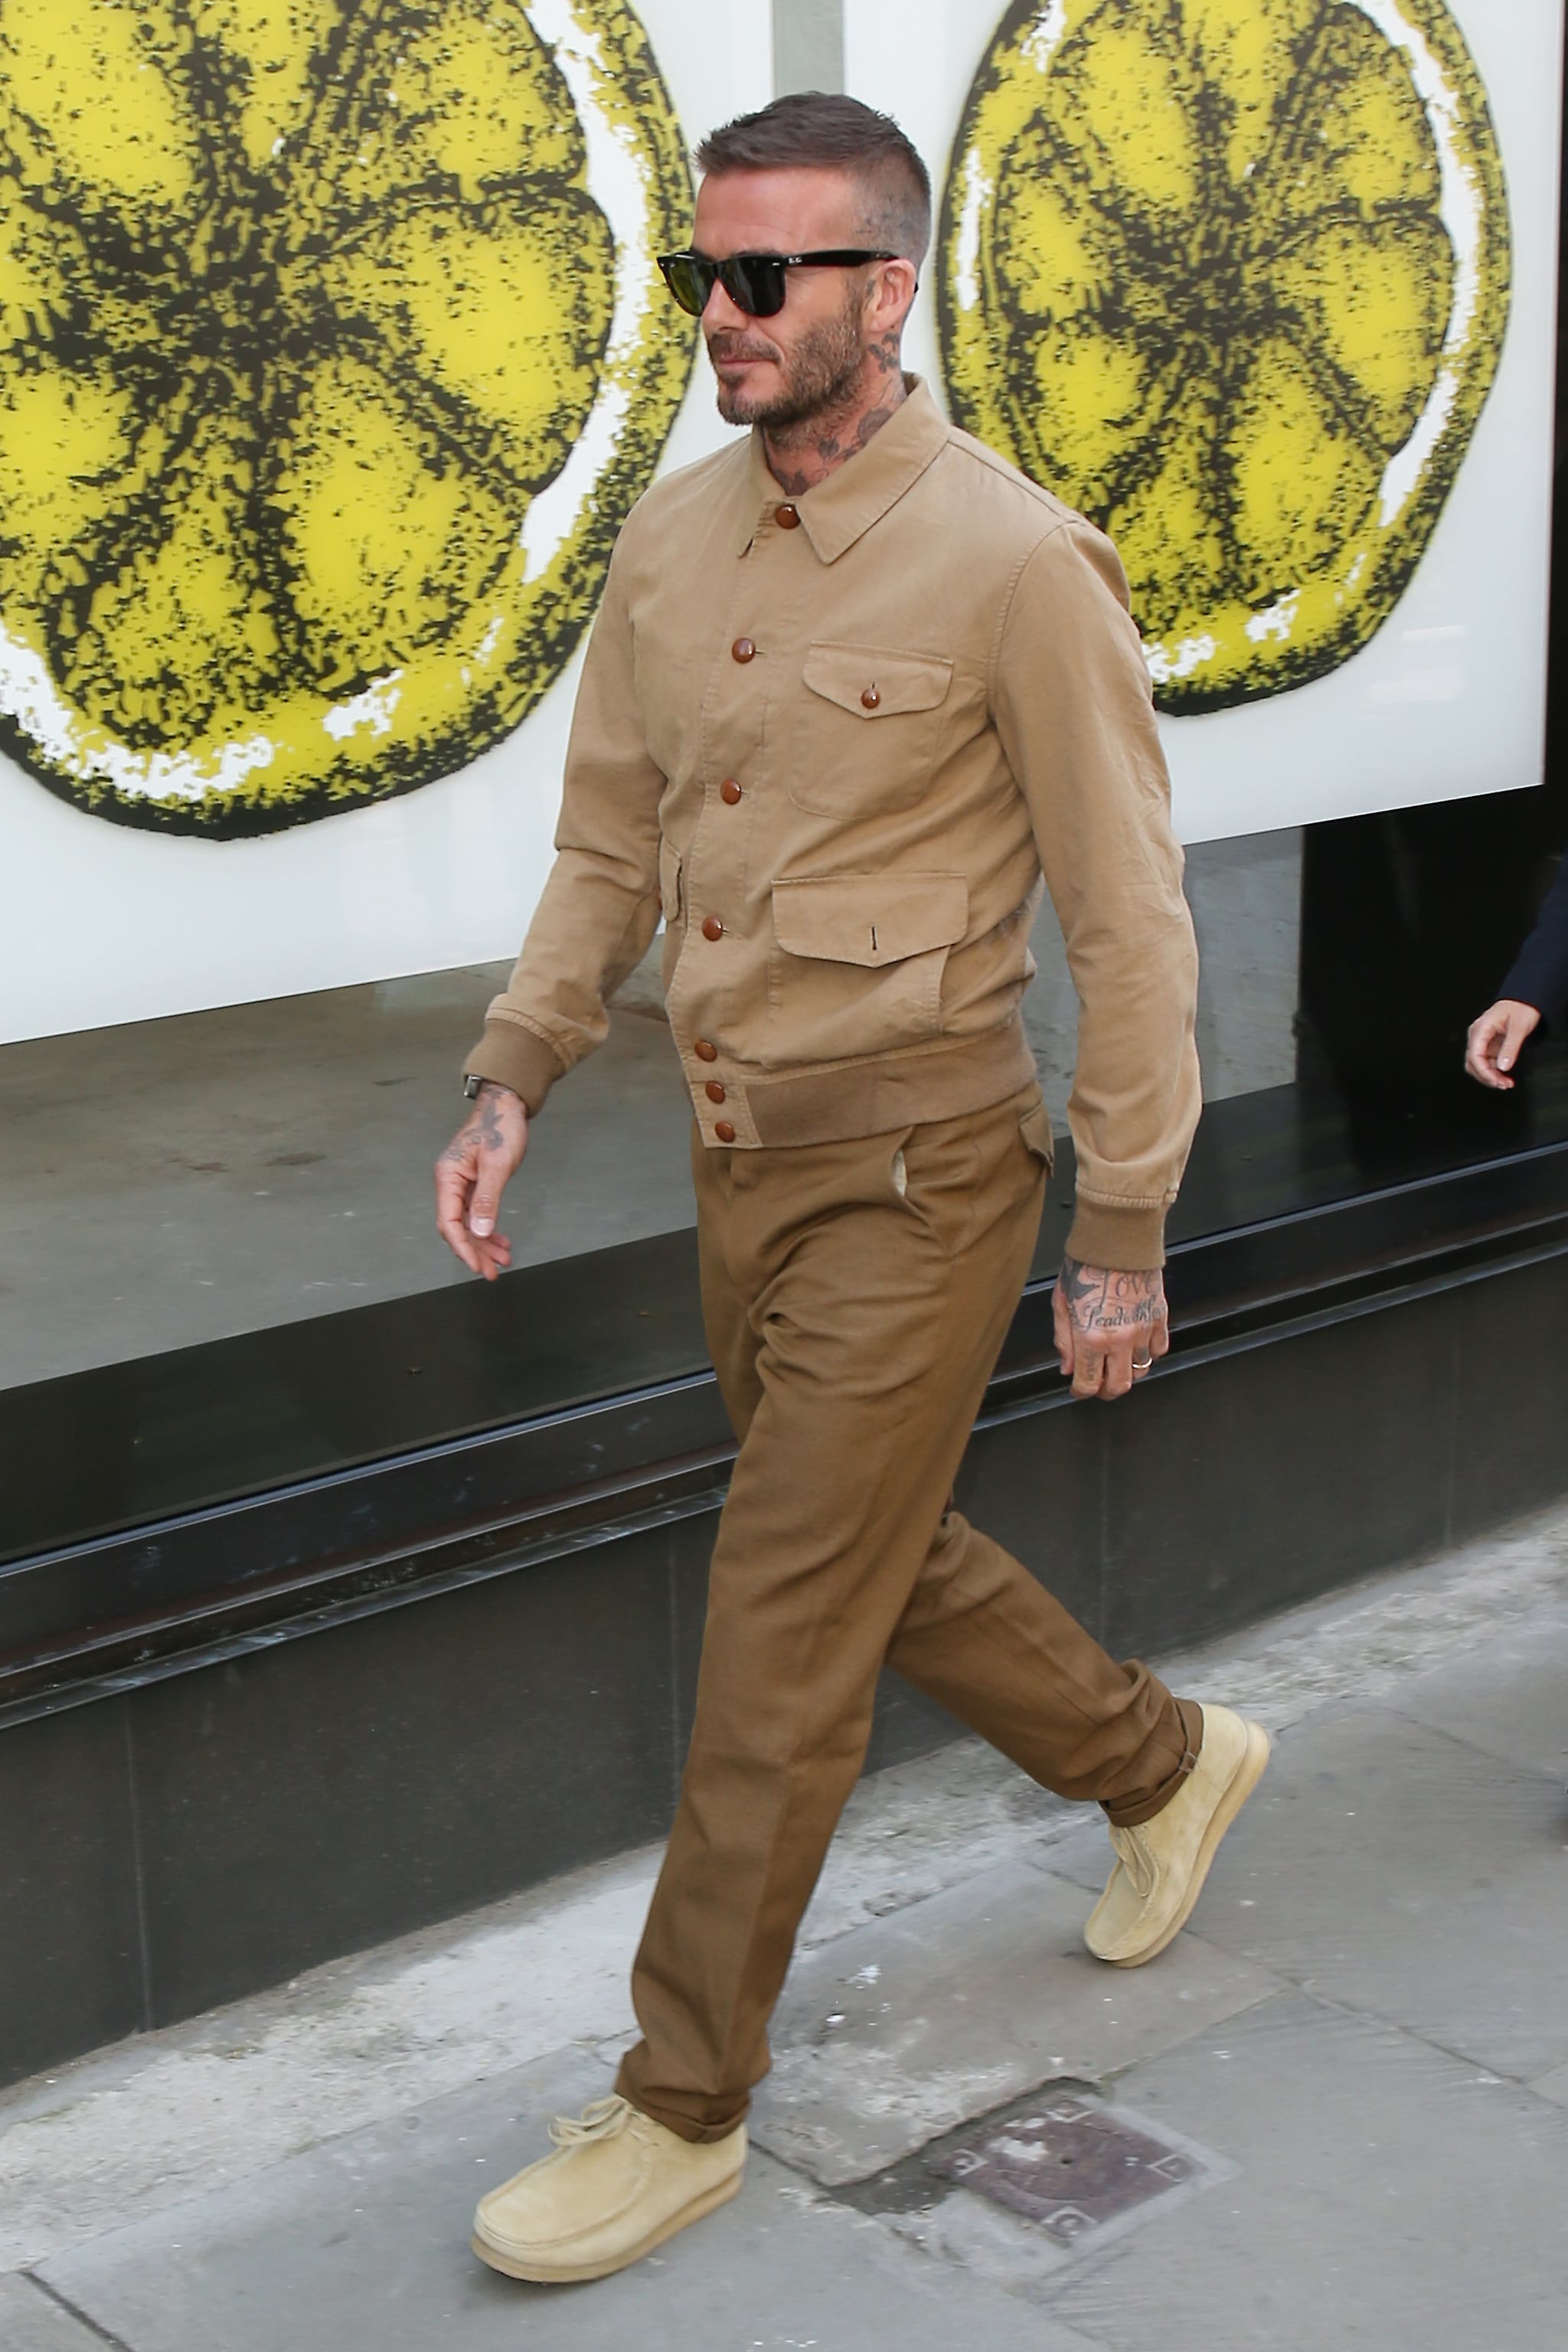 David Beckham at London Fashion Week Men's 2018